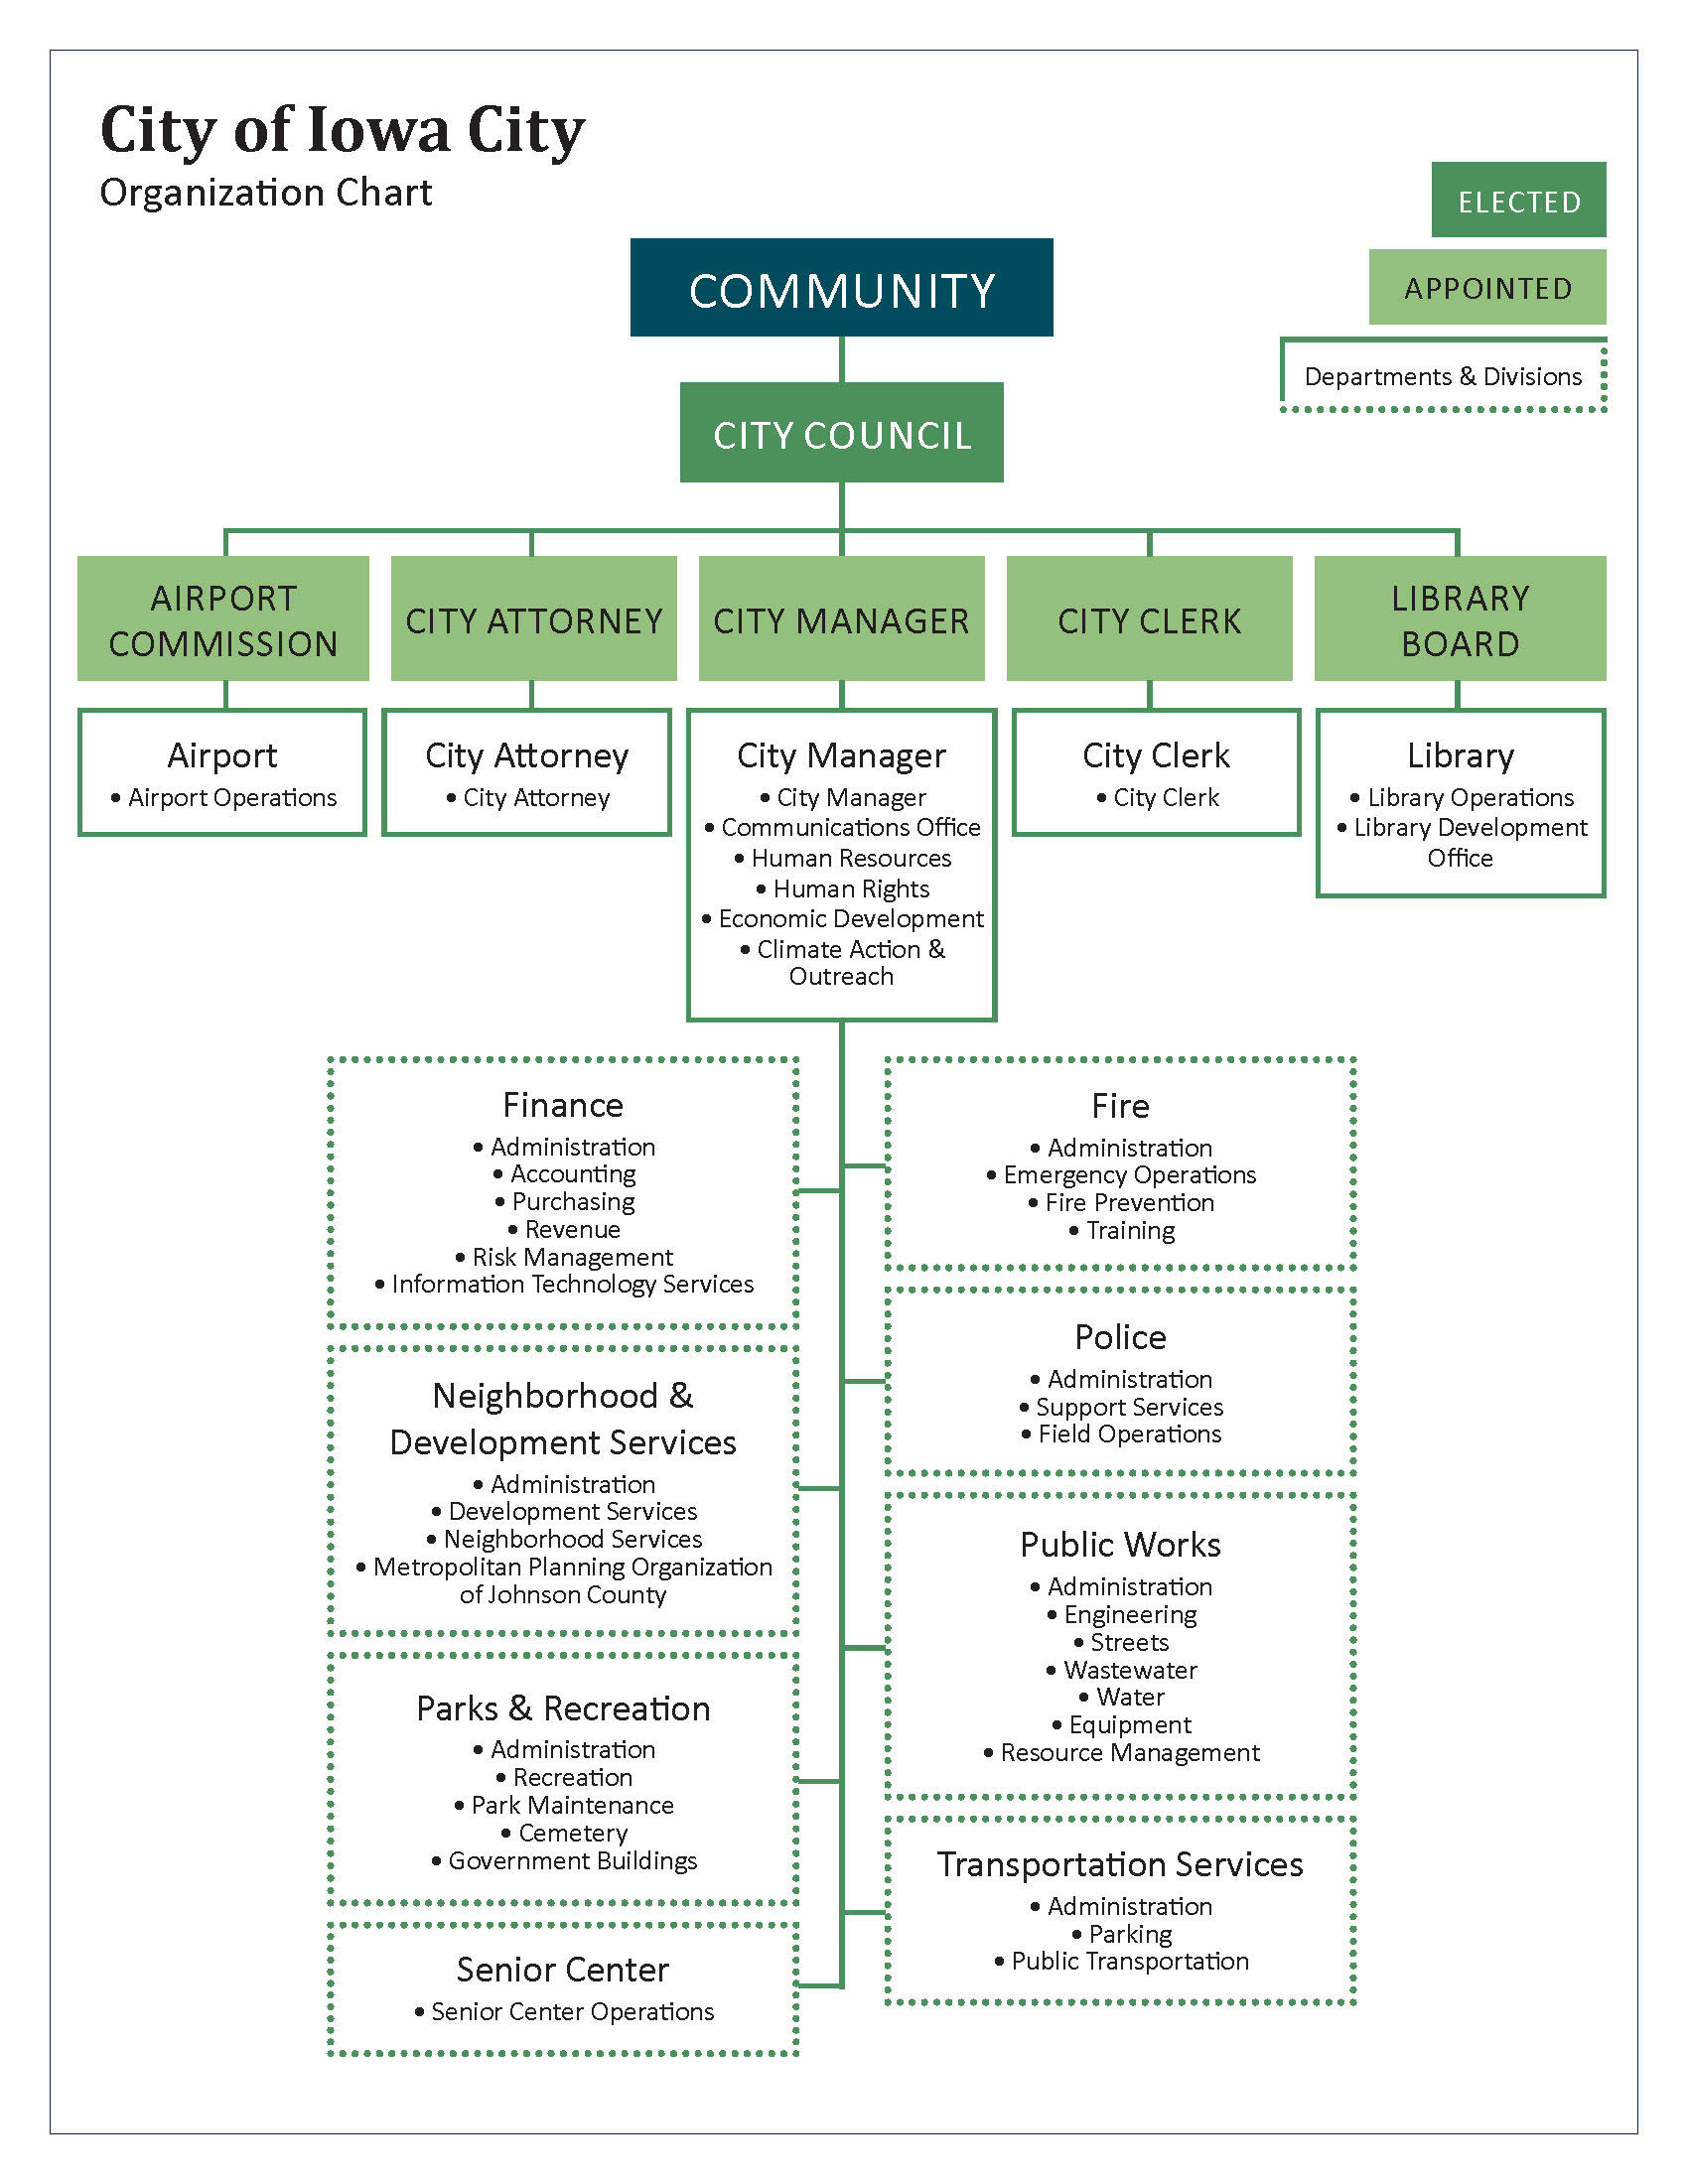 City organization chart